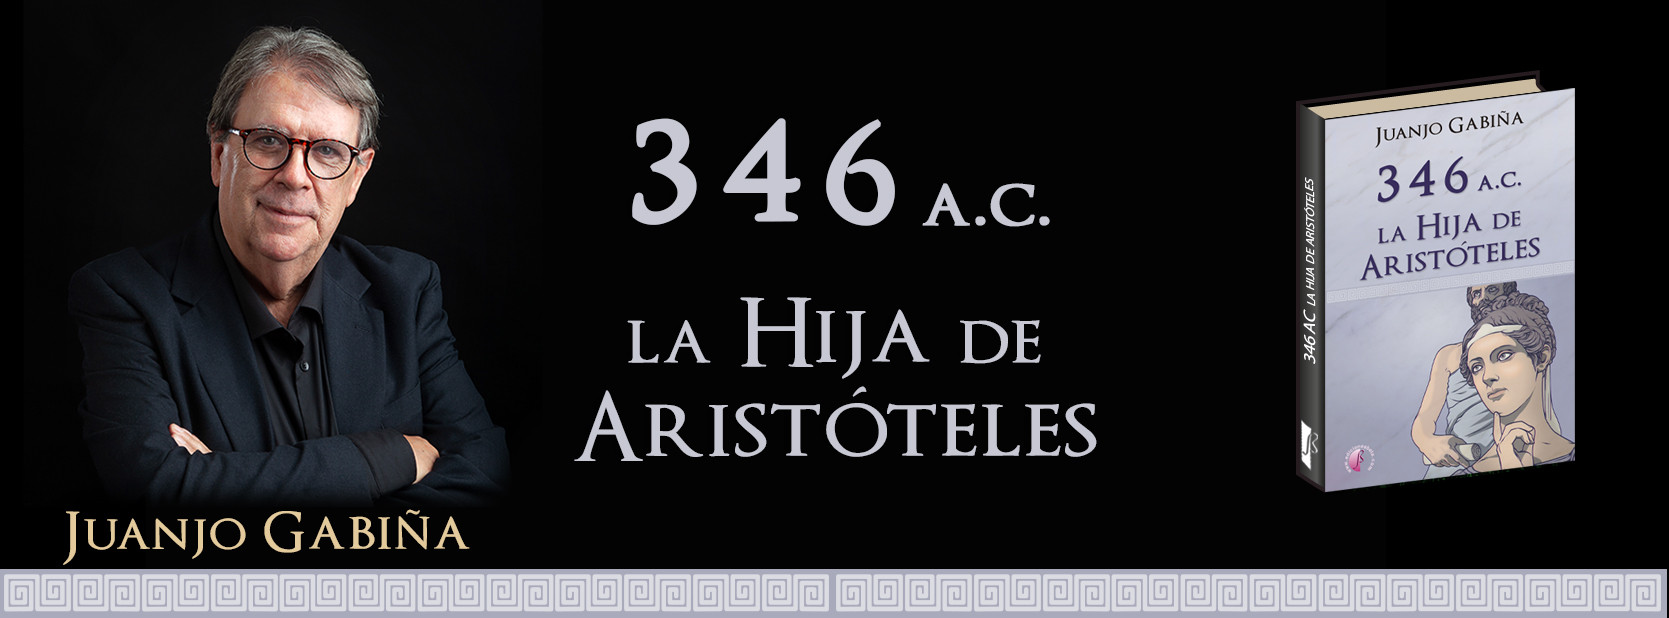 346 AC La hija de Aristóteles, de Juanjo Gabiña